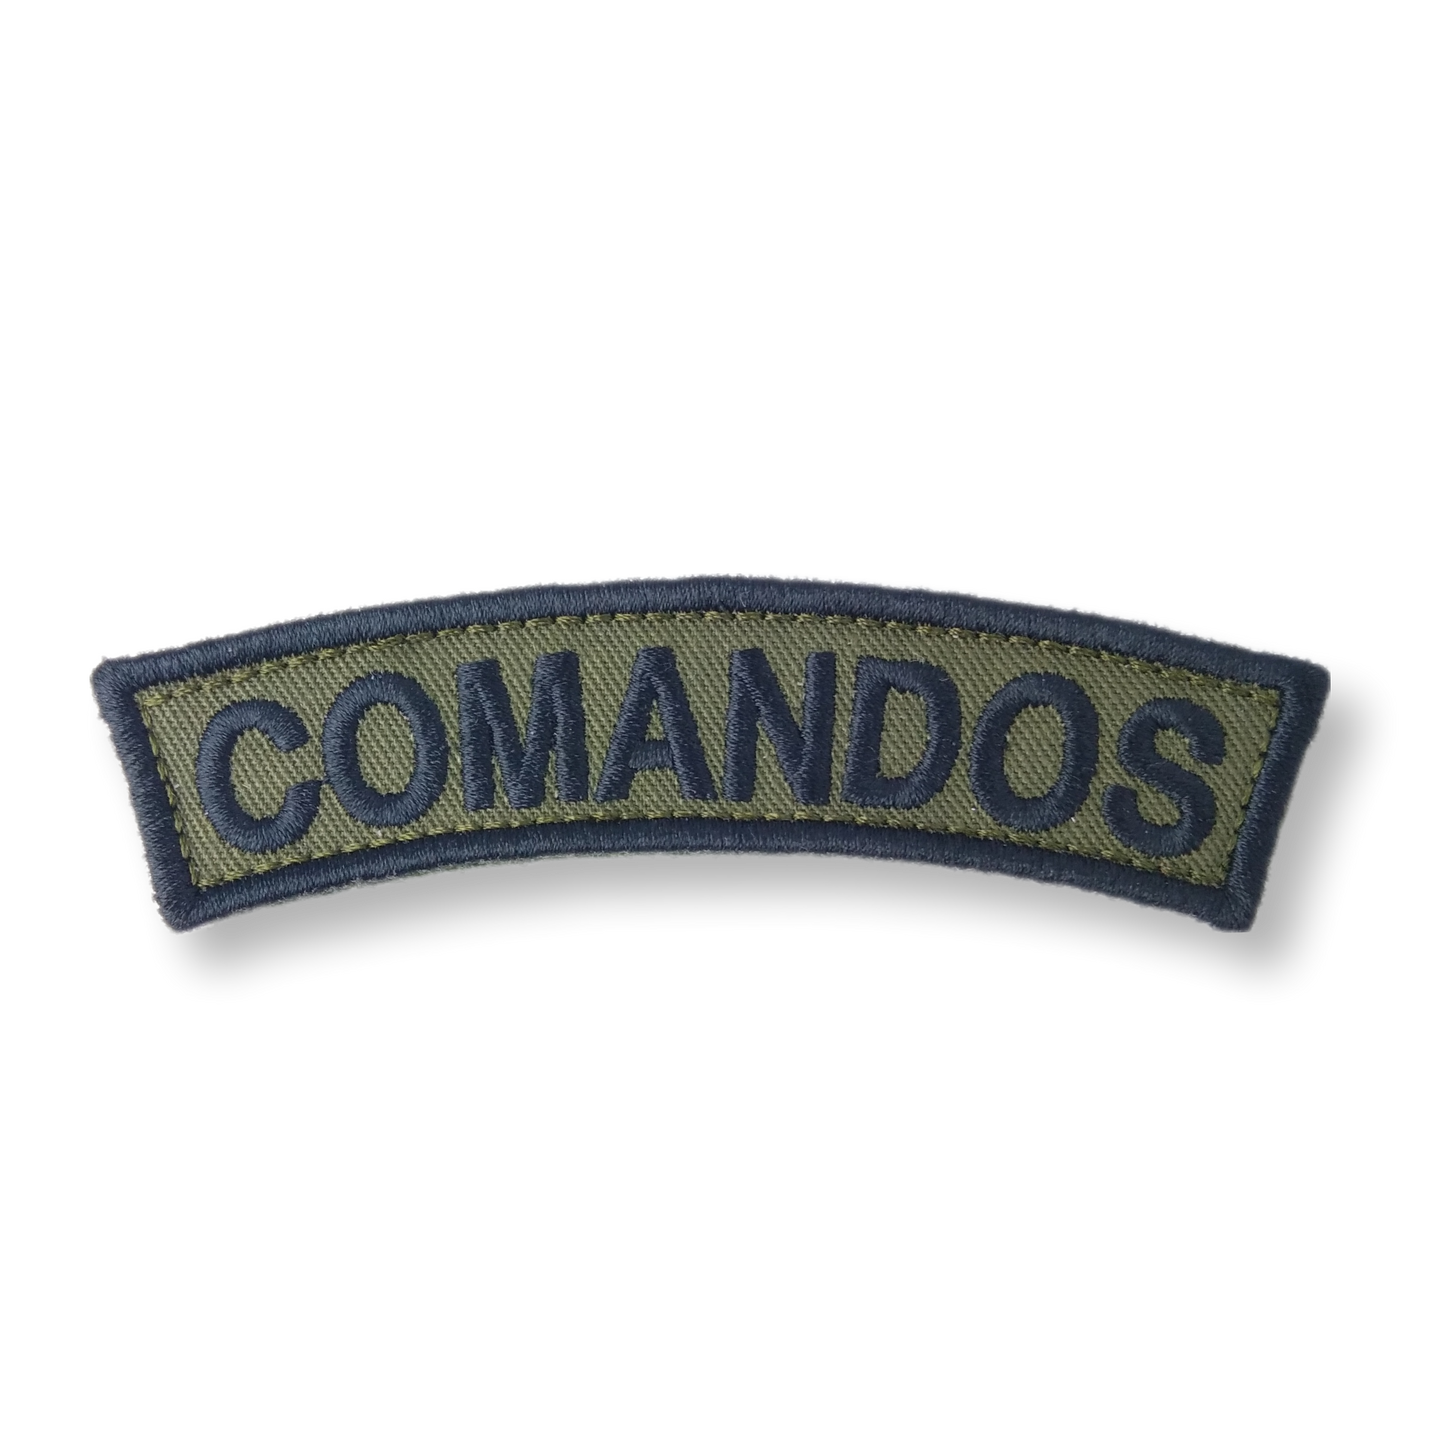 Patch Comandos